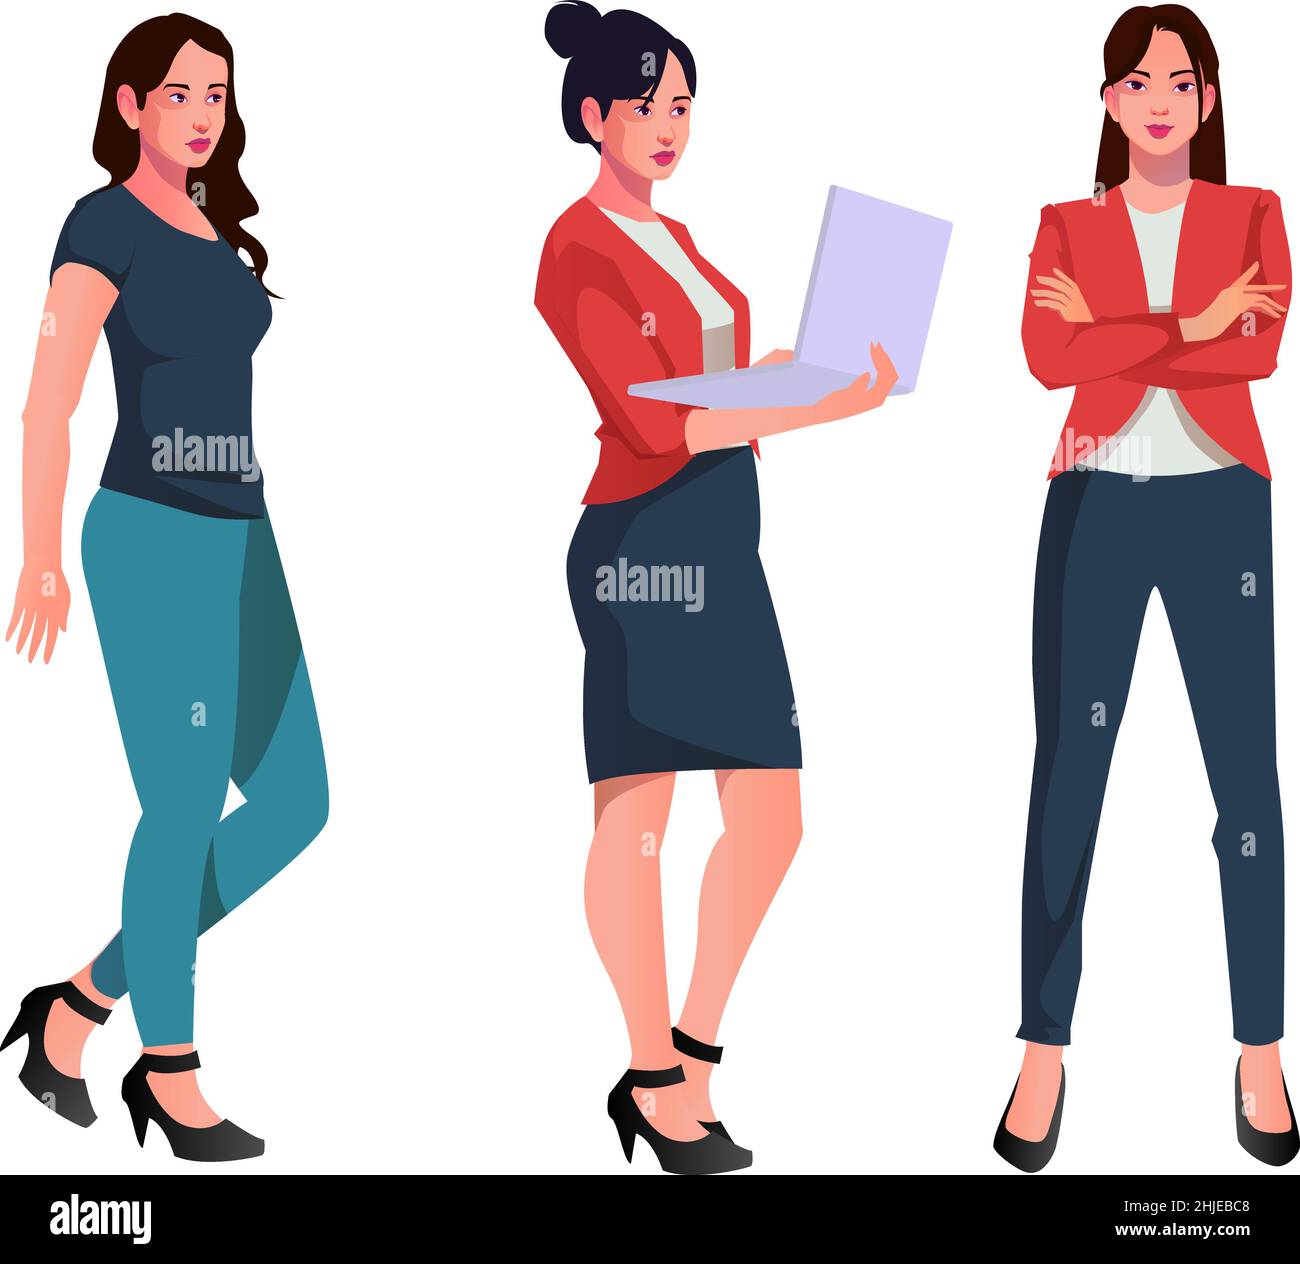 set di donne lavoratrici vettoriali personaggi design in abiti da ufficio diffrent poses fronte retro e laterale vista reale stile personaggio Illustrazione Vettoriale